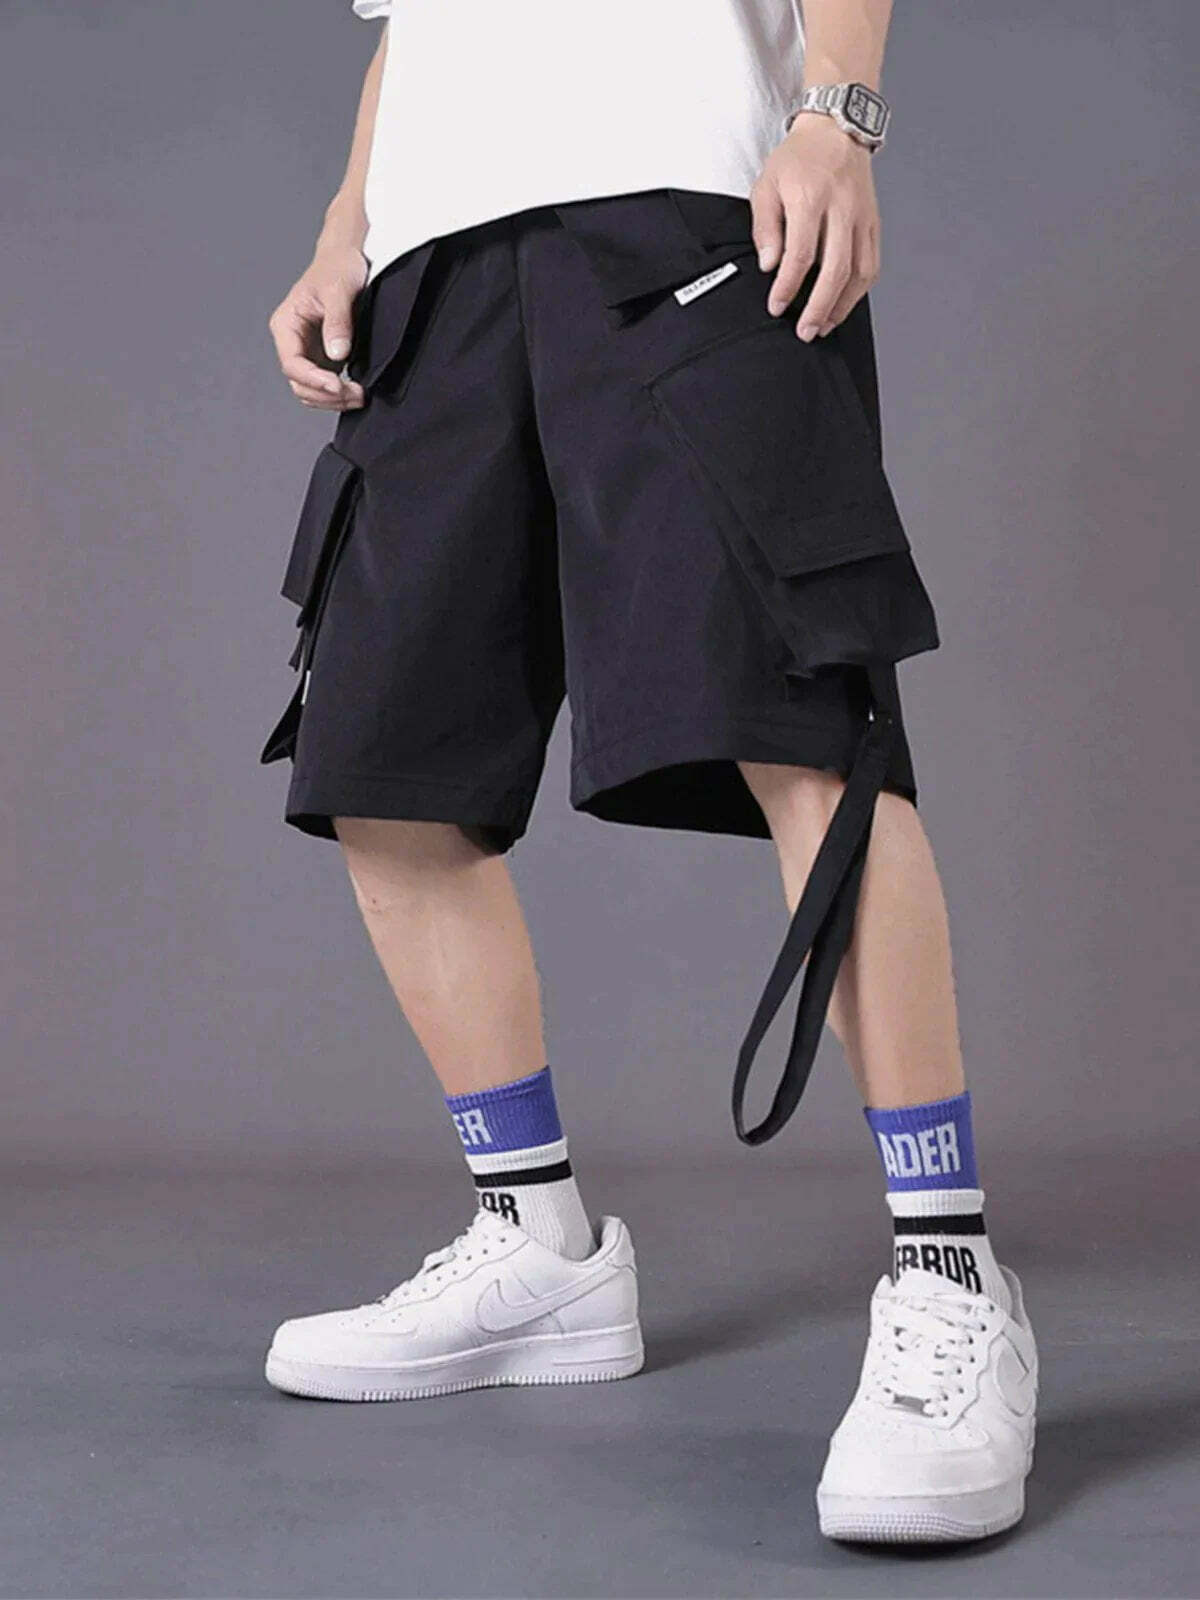 drawstring cargo shorts urban streetwear essential 4762